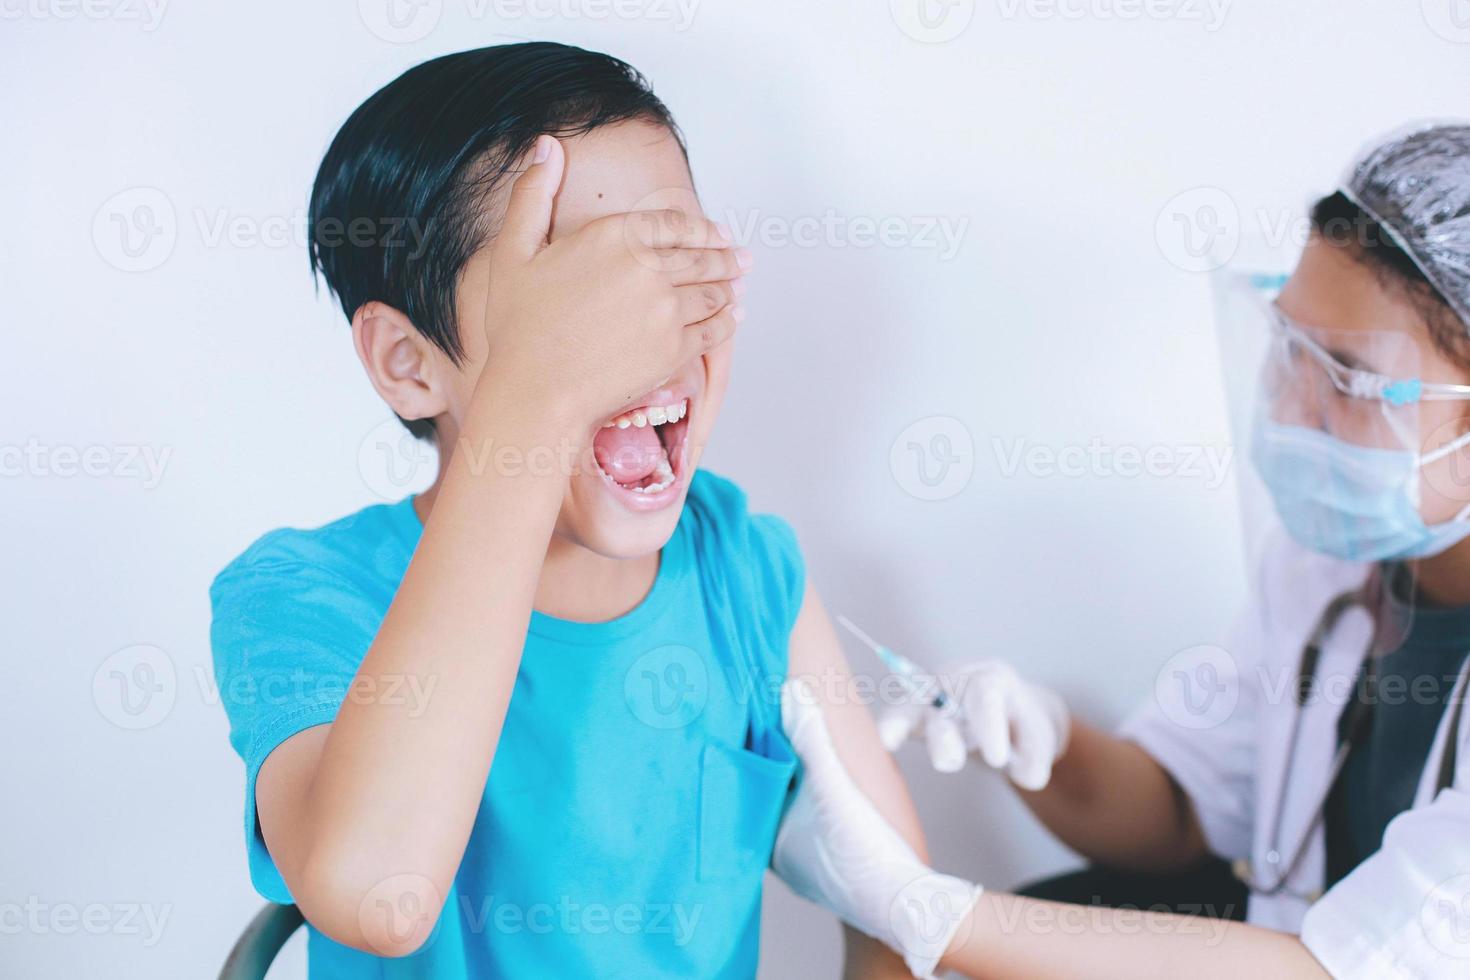 jongen schreeuwt vanwege pijn bij vaccininjectie, injectiefobie. geneeskunde, vaccinatie, immunisatie en gezondheidszorg concept foto